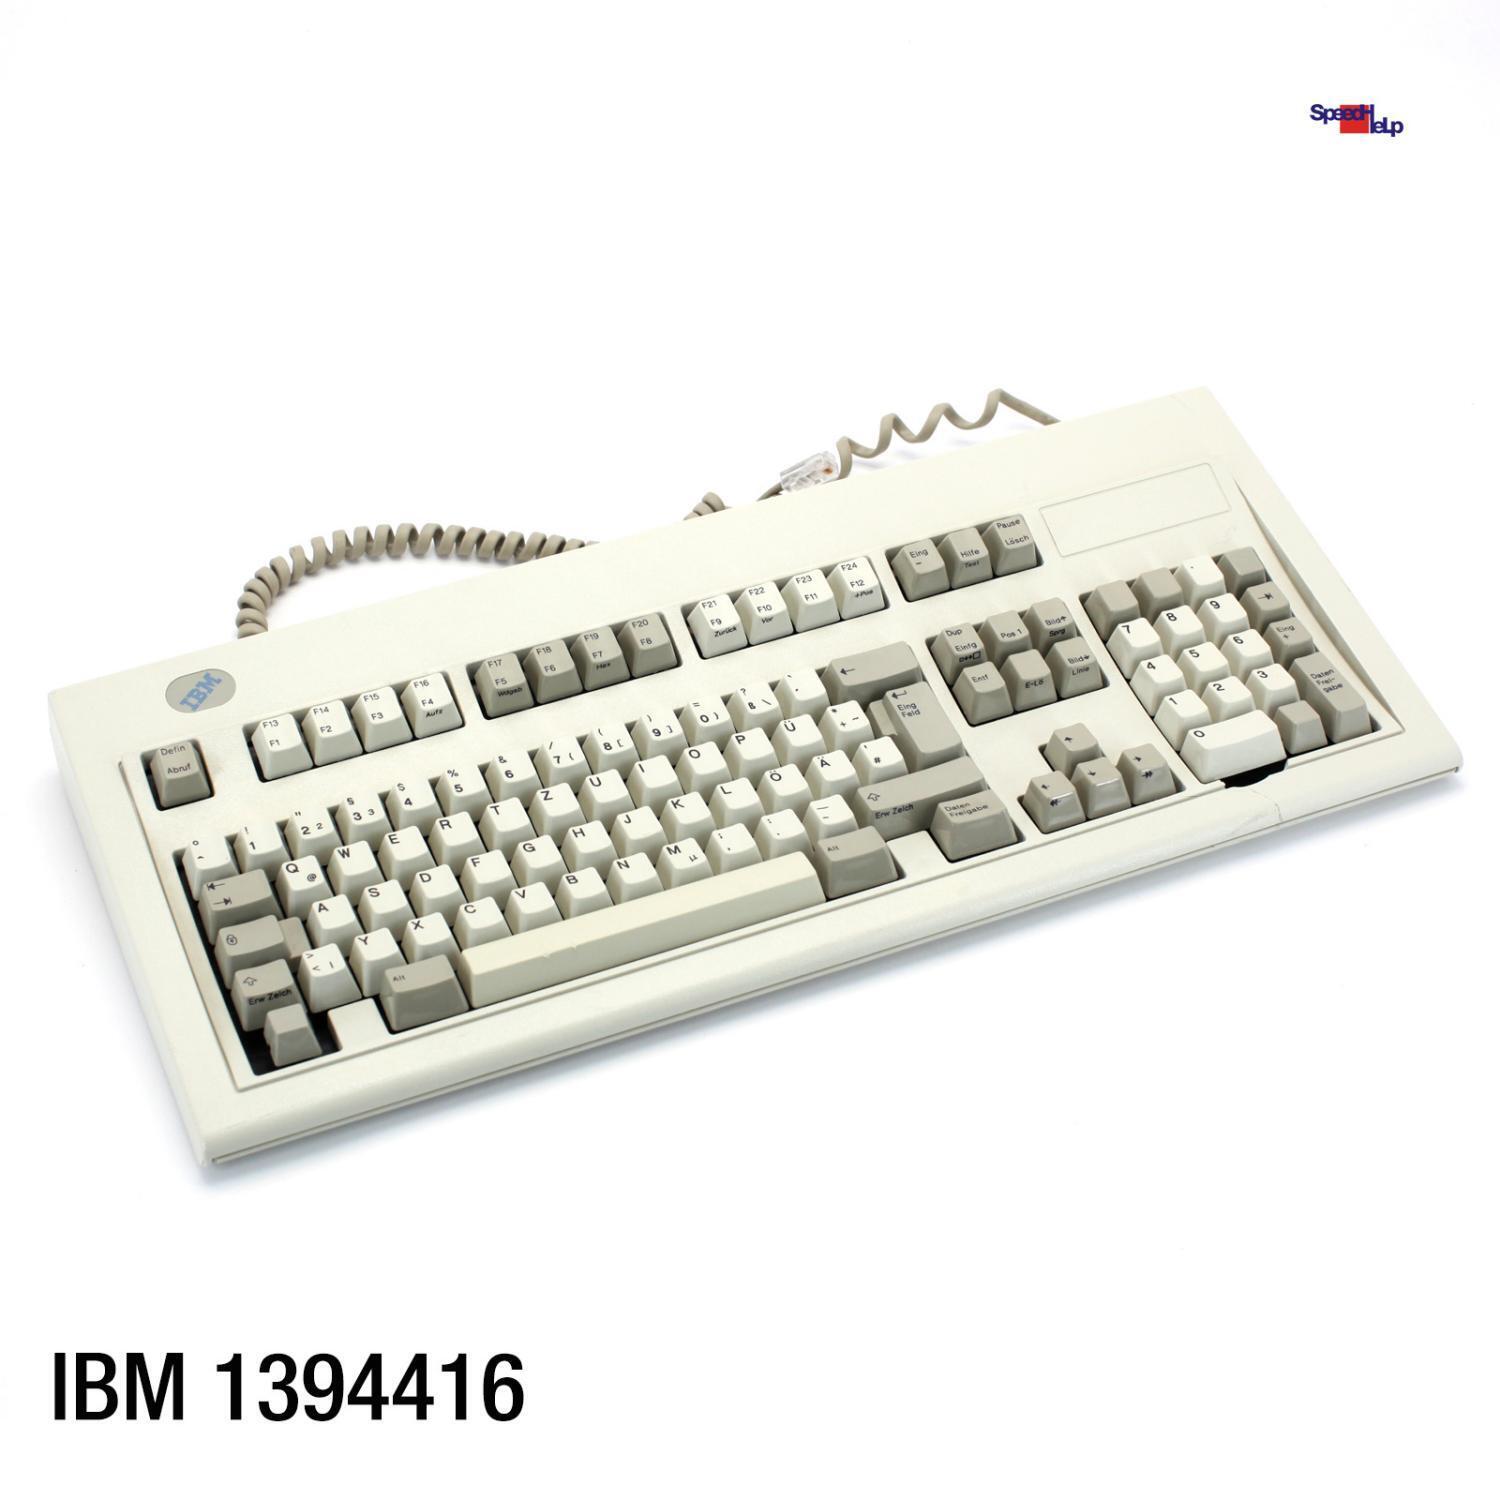 IBM 1394416 Vintage Keyboard Computer Keyboard Qwertz German Retro Old 1995